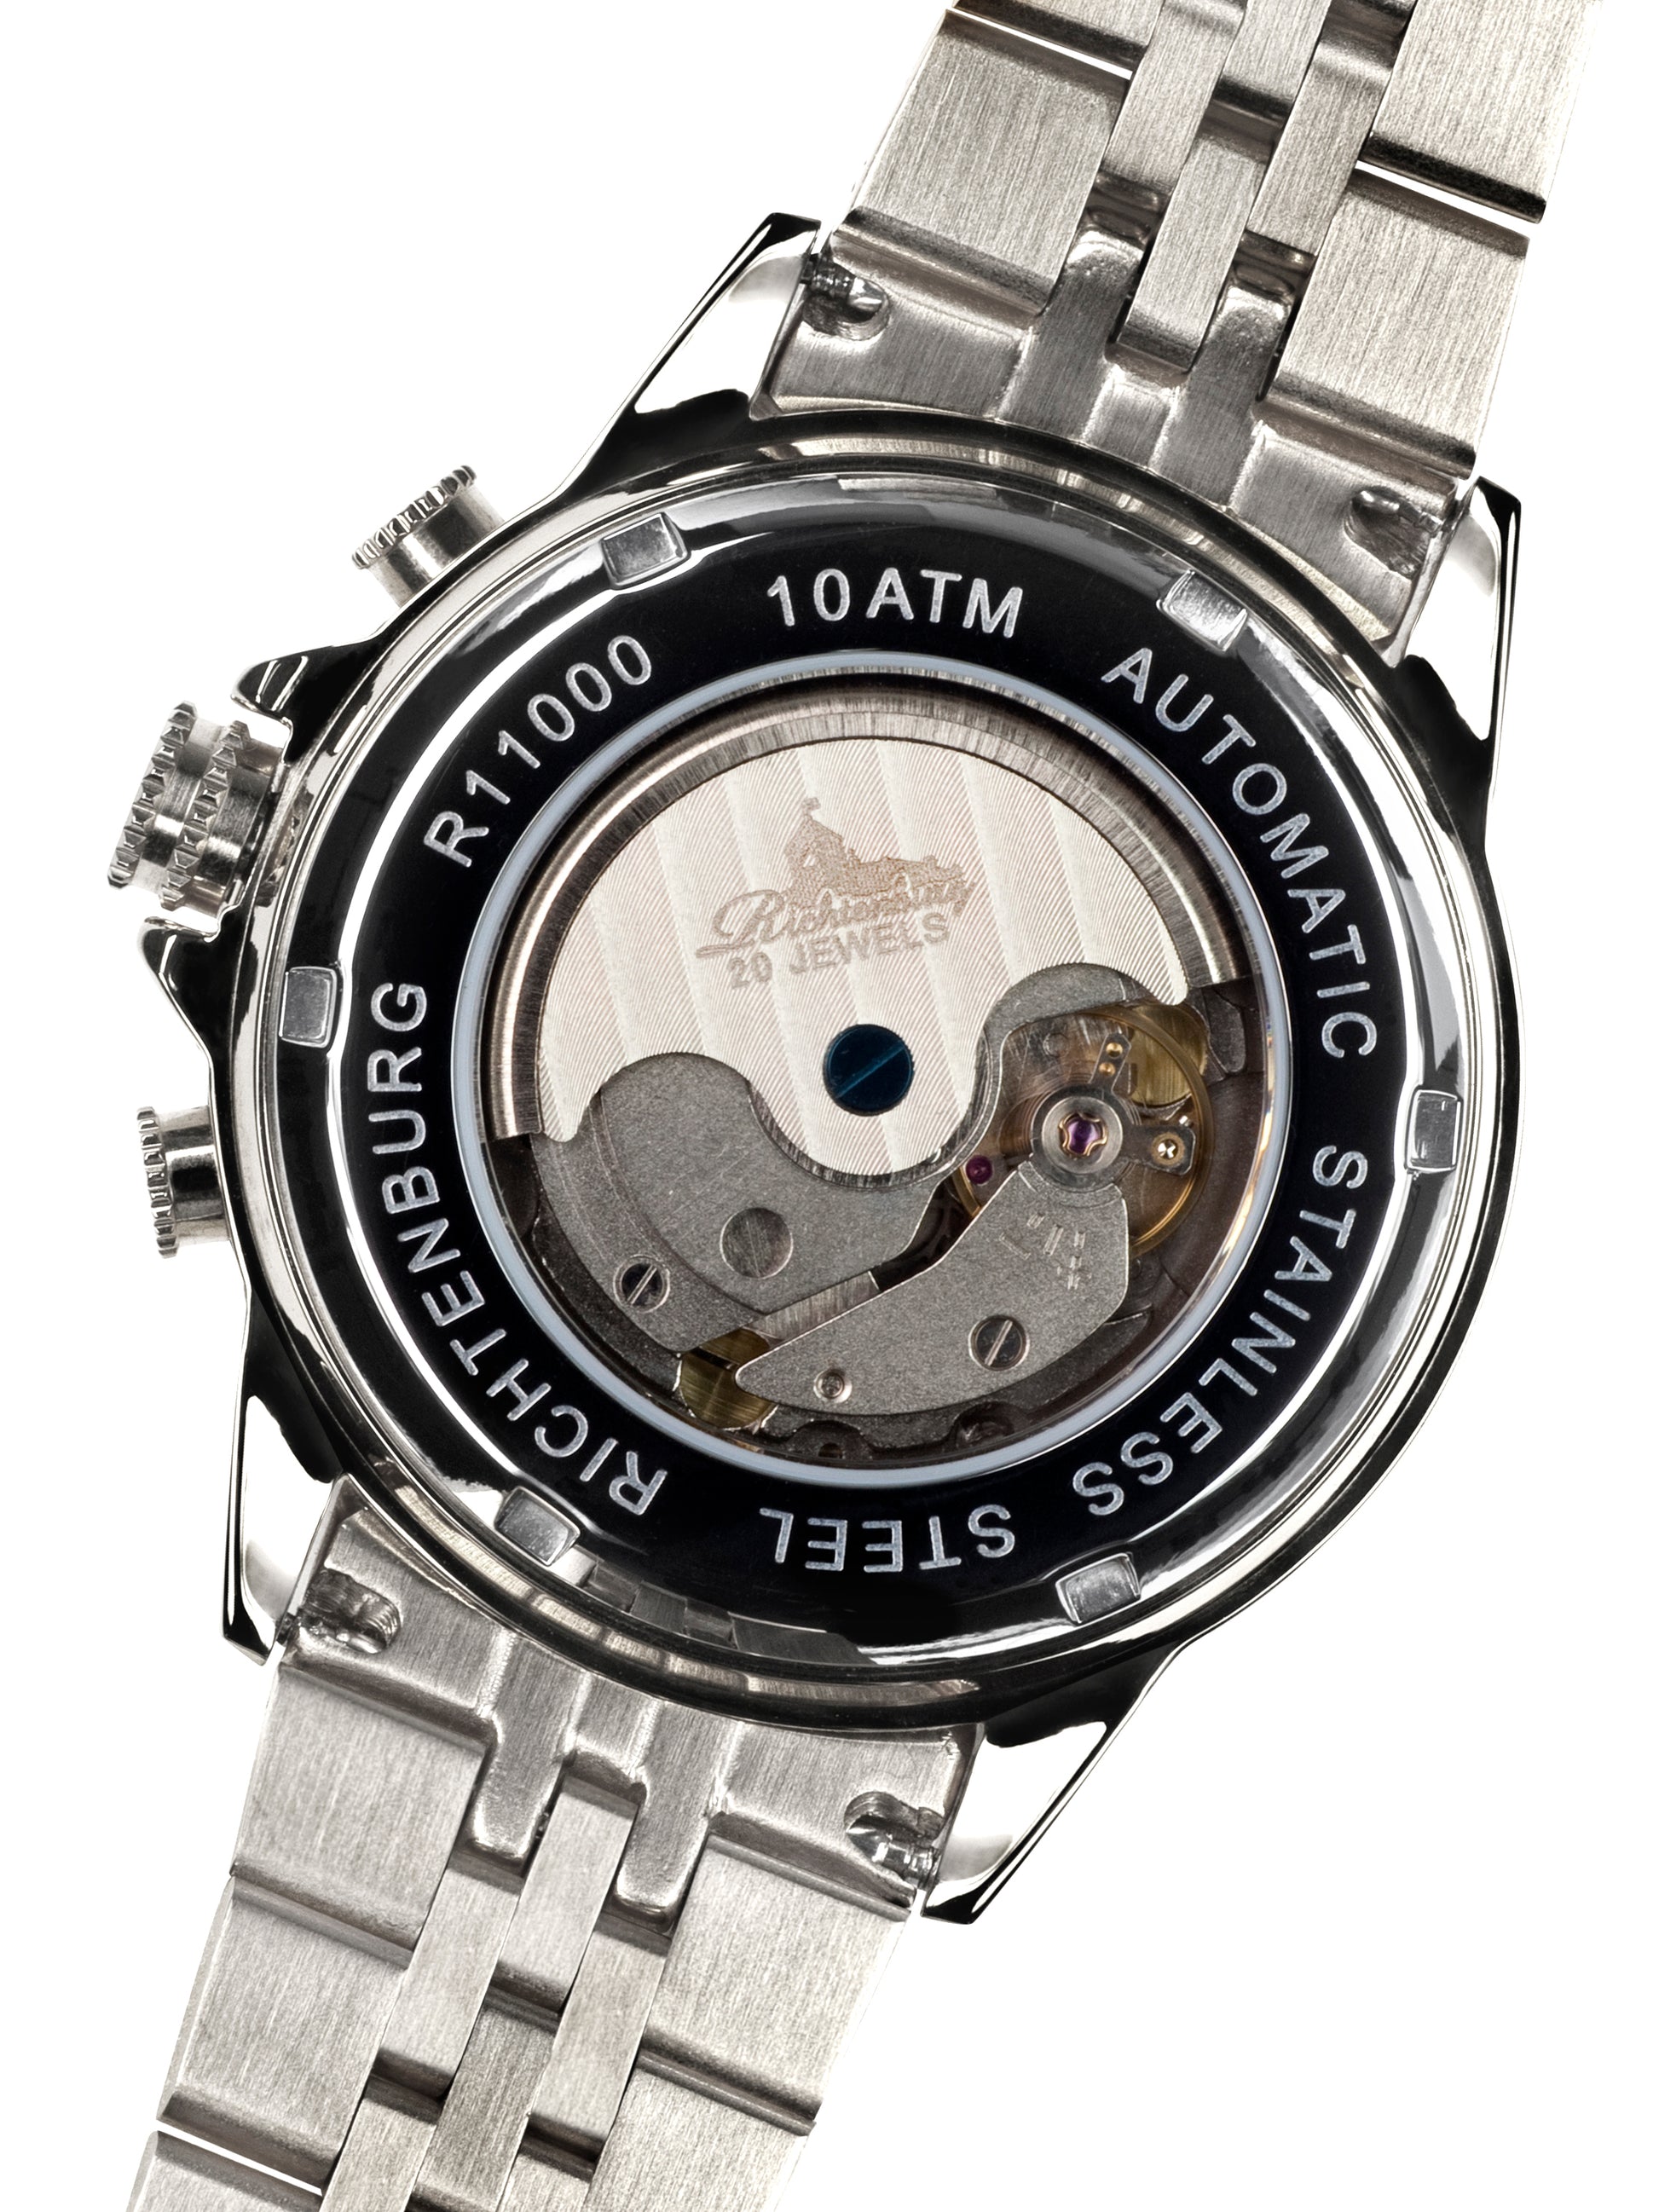 Automatic watches — Cassiopeia — Richtenburg — steel black